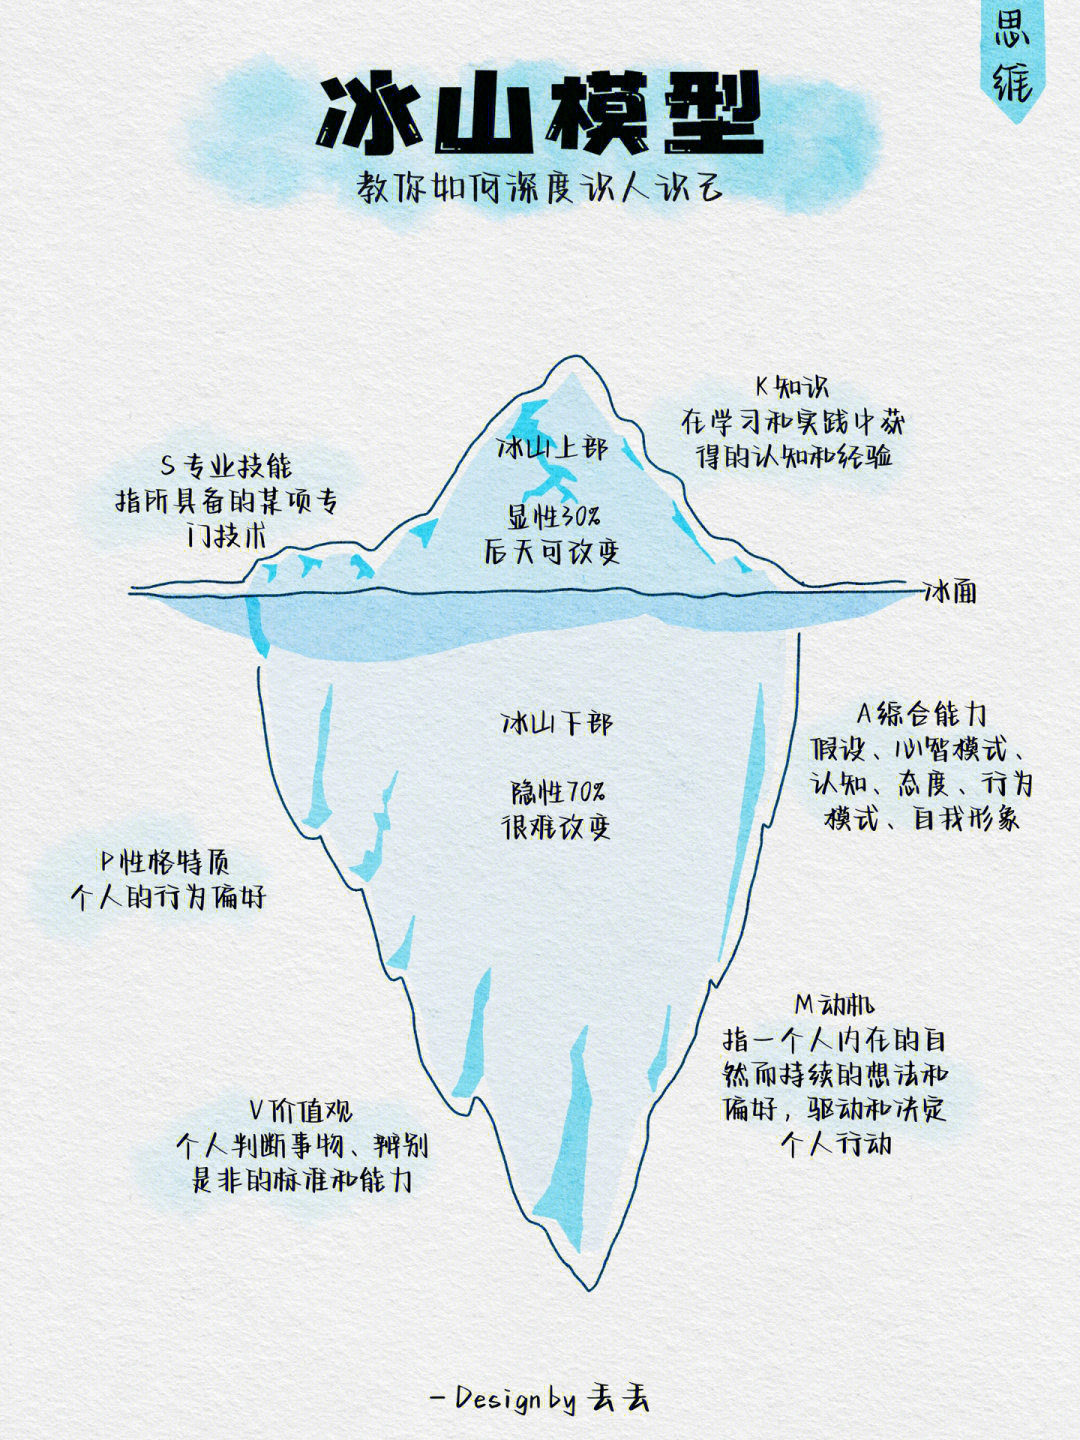 文化冰山模型图片